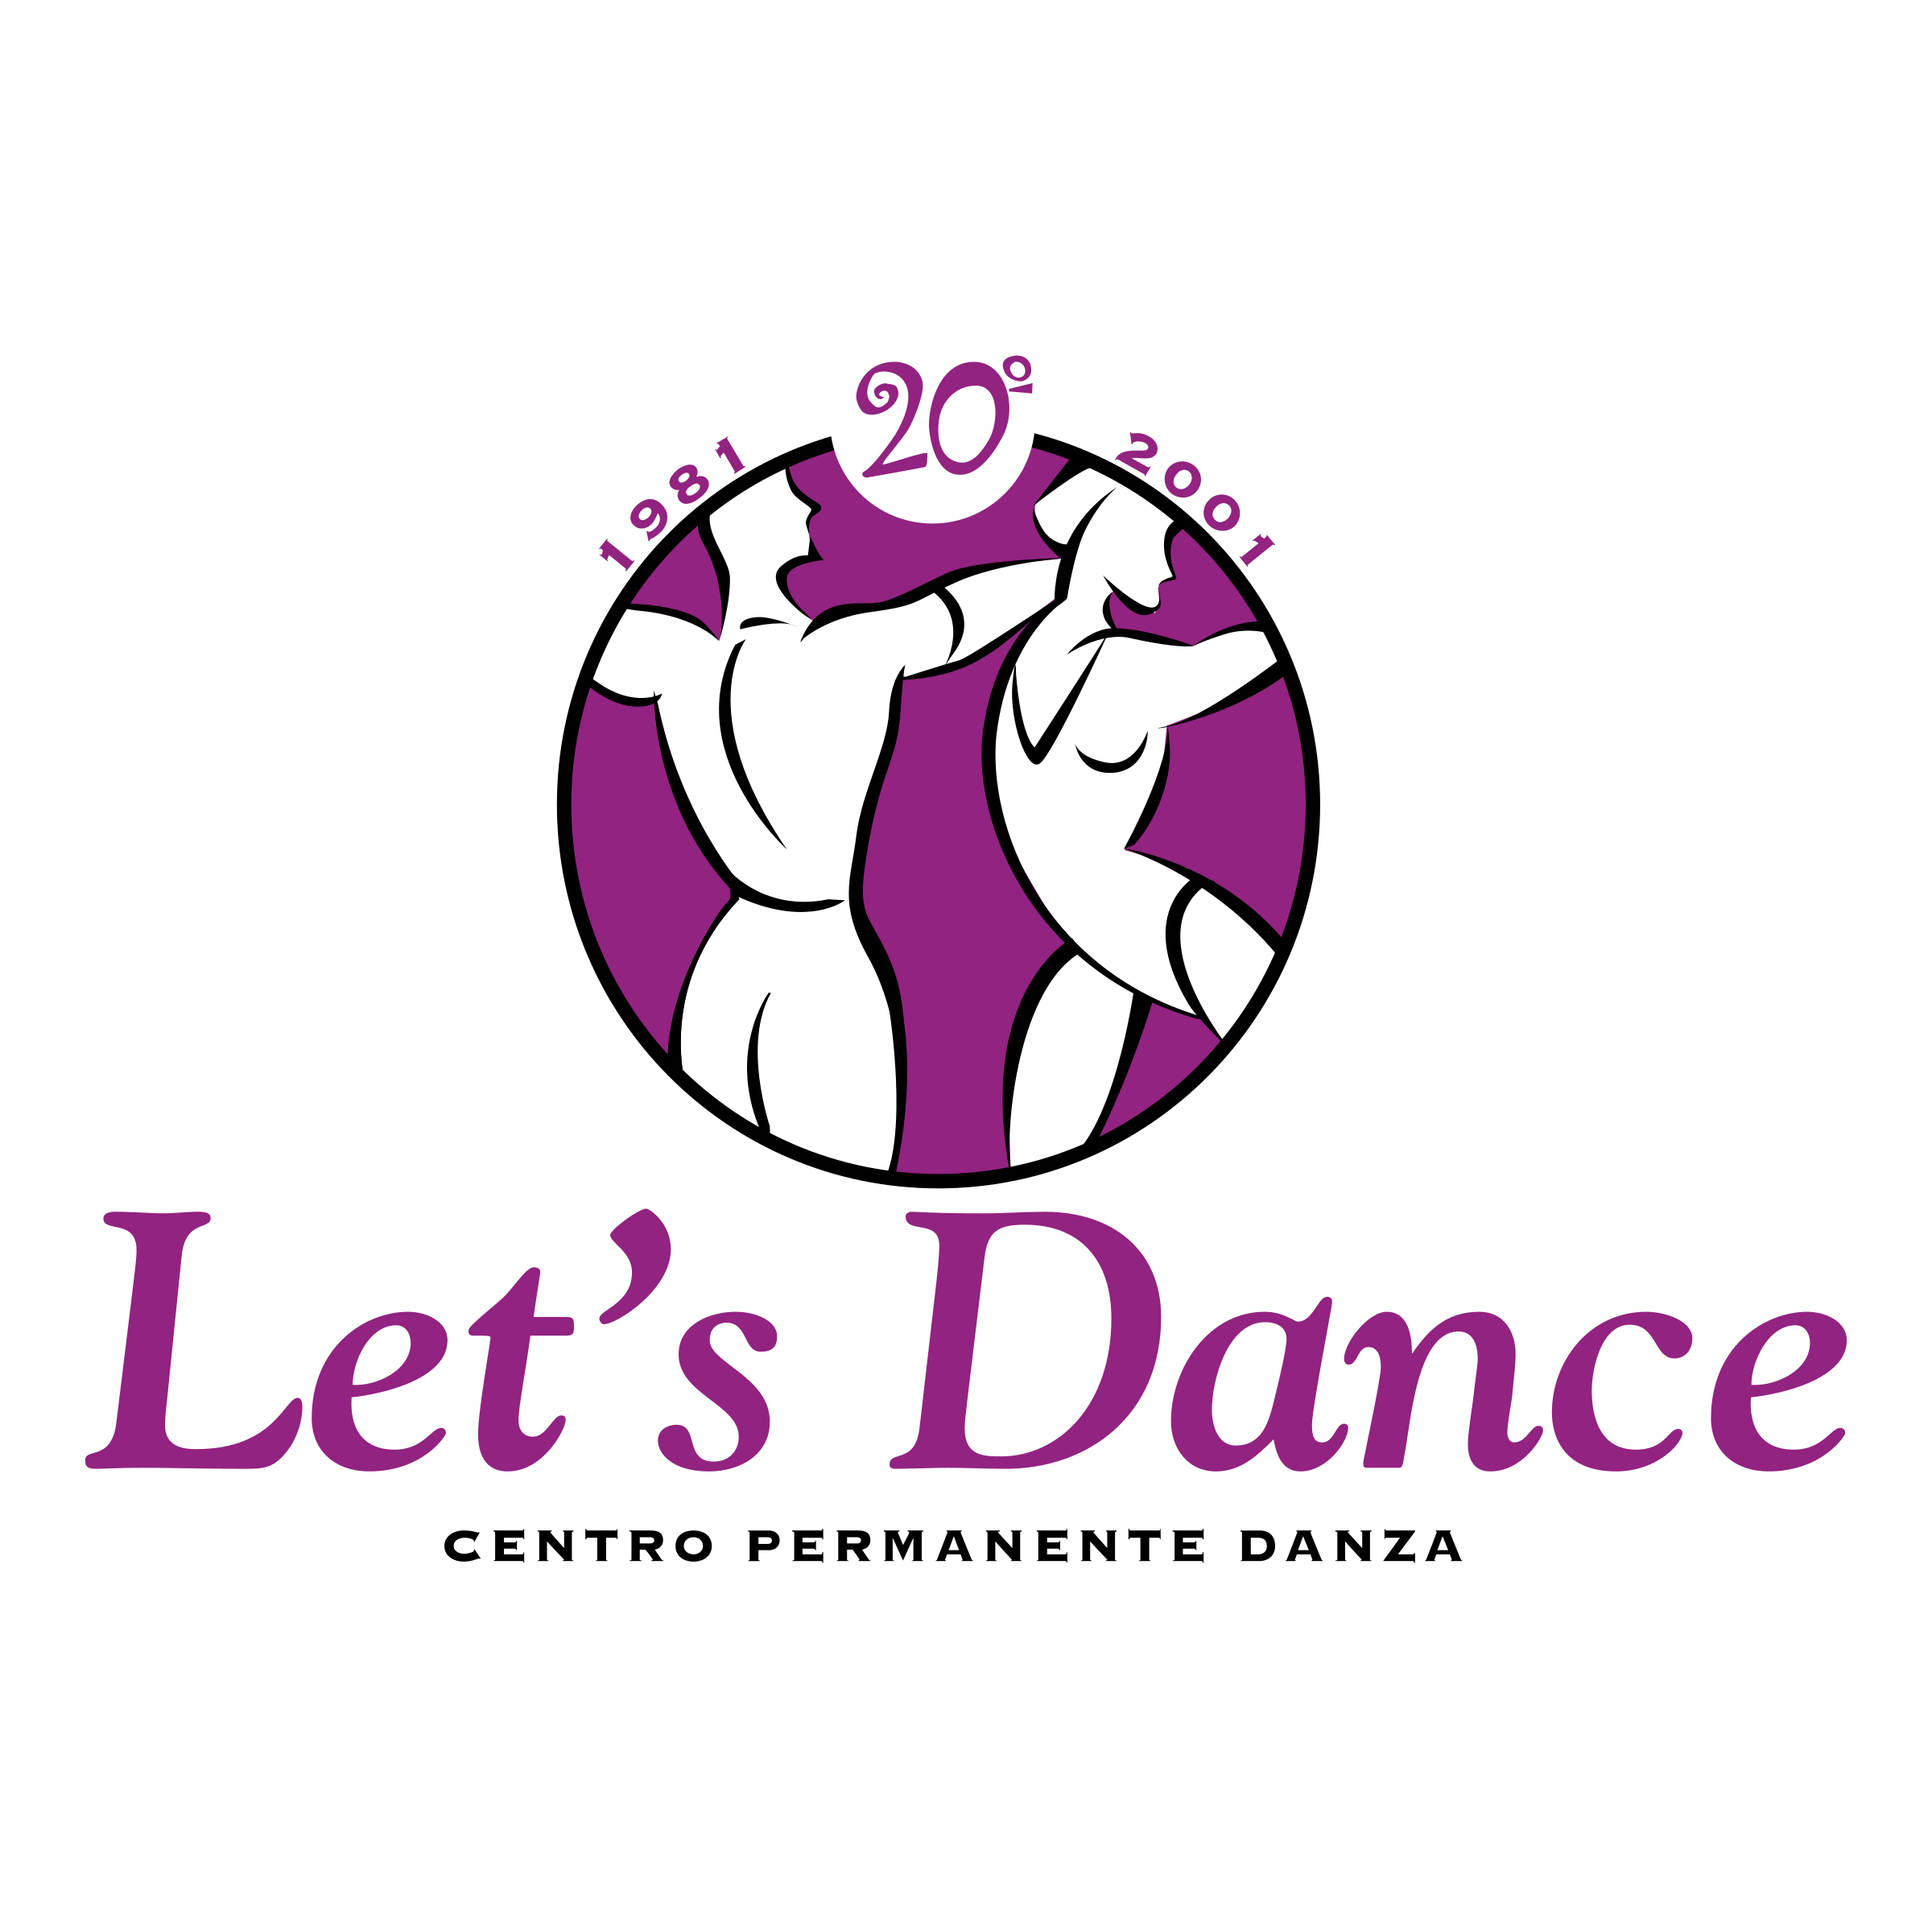 Let's Dance Logo - Let's Dance Logo PNG Transparent & SVG Vector